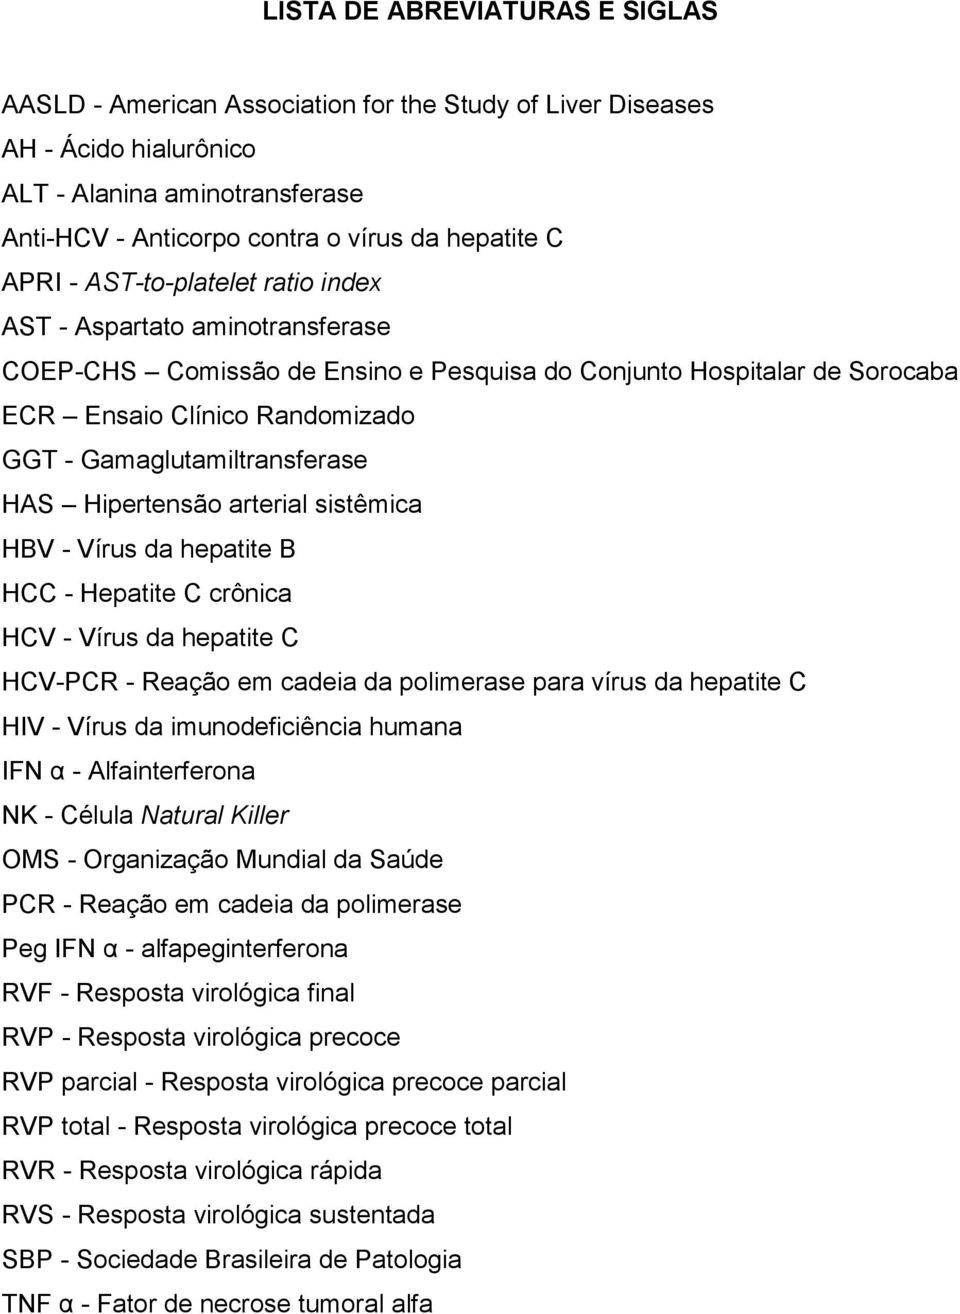 Gamaglutamiltransferase HAS Hipertensão arterial sistêmica HBV - Vírus da hepatite B HCC - Hepatite C crônica HCV - Vírus da hepatite C HCV-PCR - Reação em cadeia da polimerase para vírus da hepatite